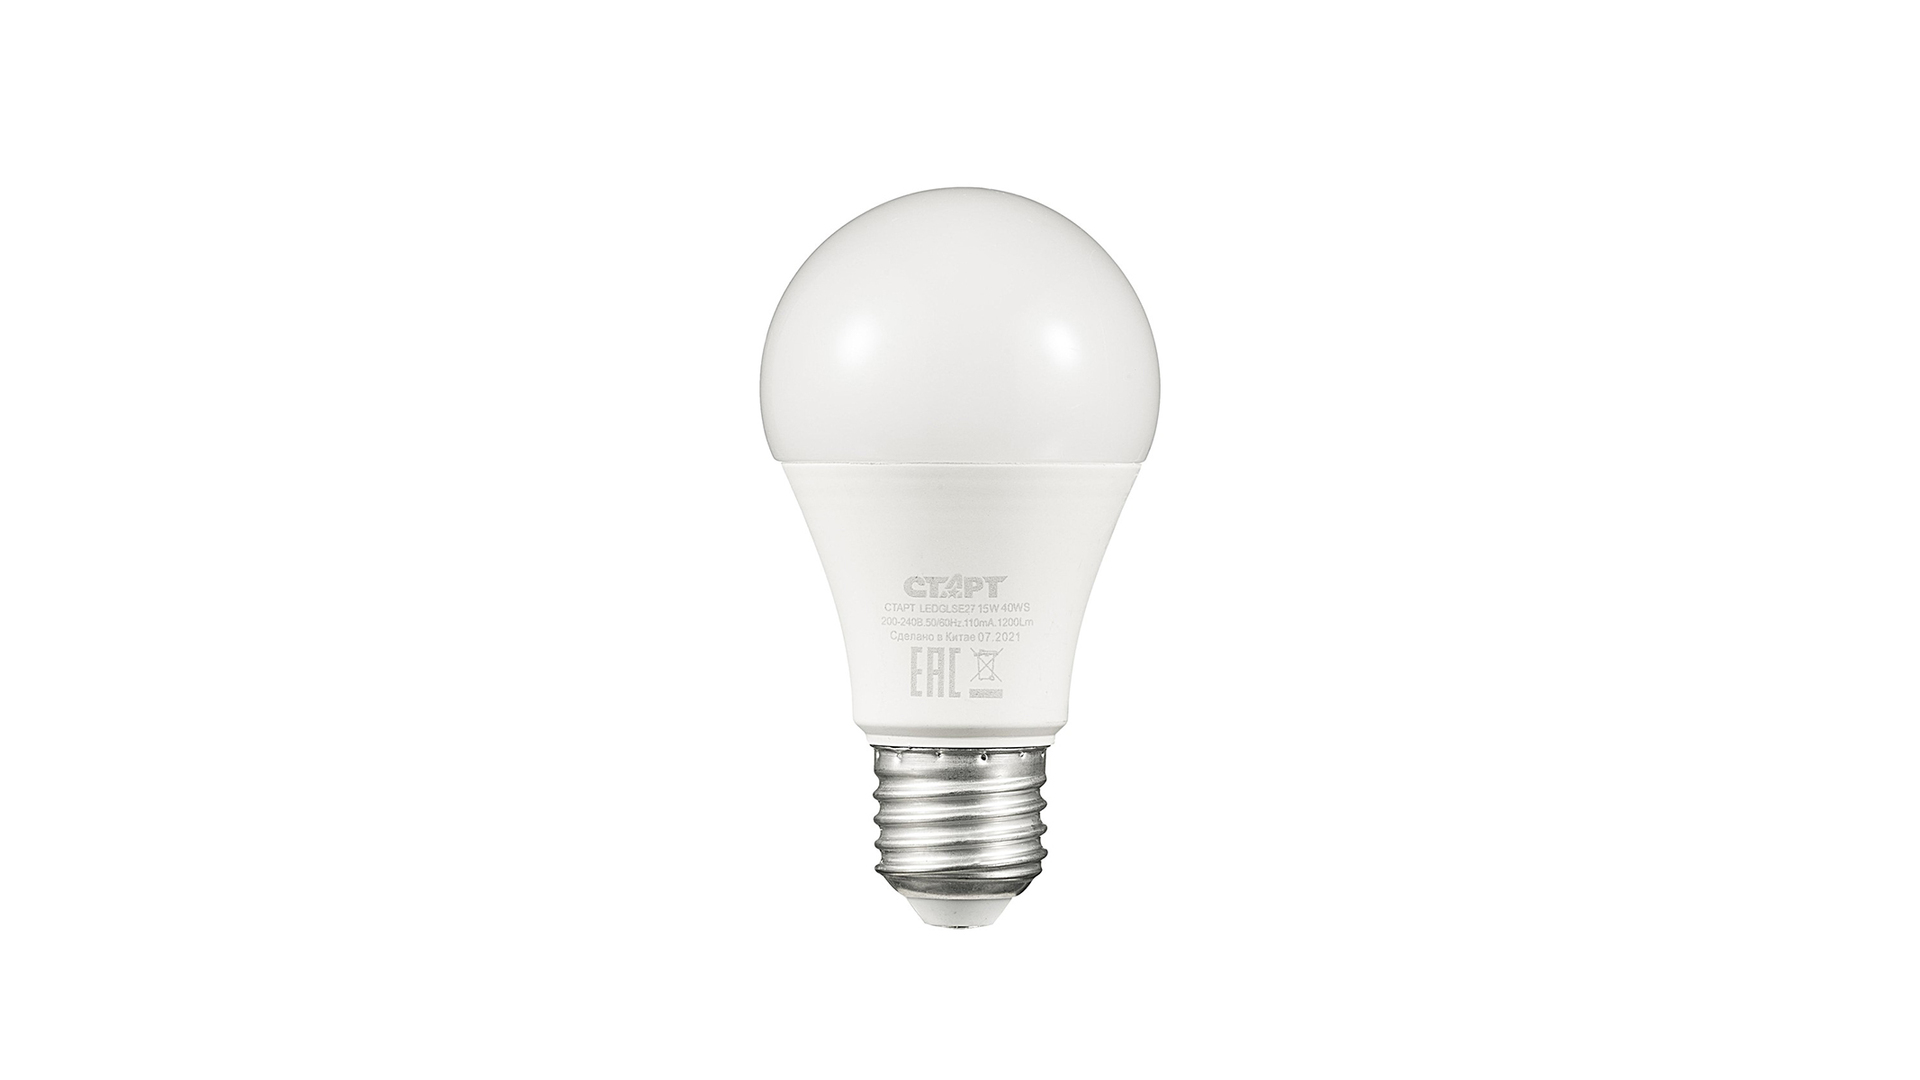 Лампа светодиодная E27 грушевидная, 15 Вт, 4000 K / нейтральный свет, 220 В, СТАРТ LEDGLSE27 15W 40 WS (17287)